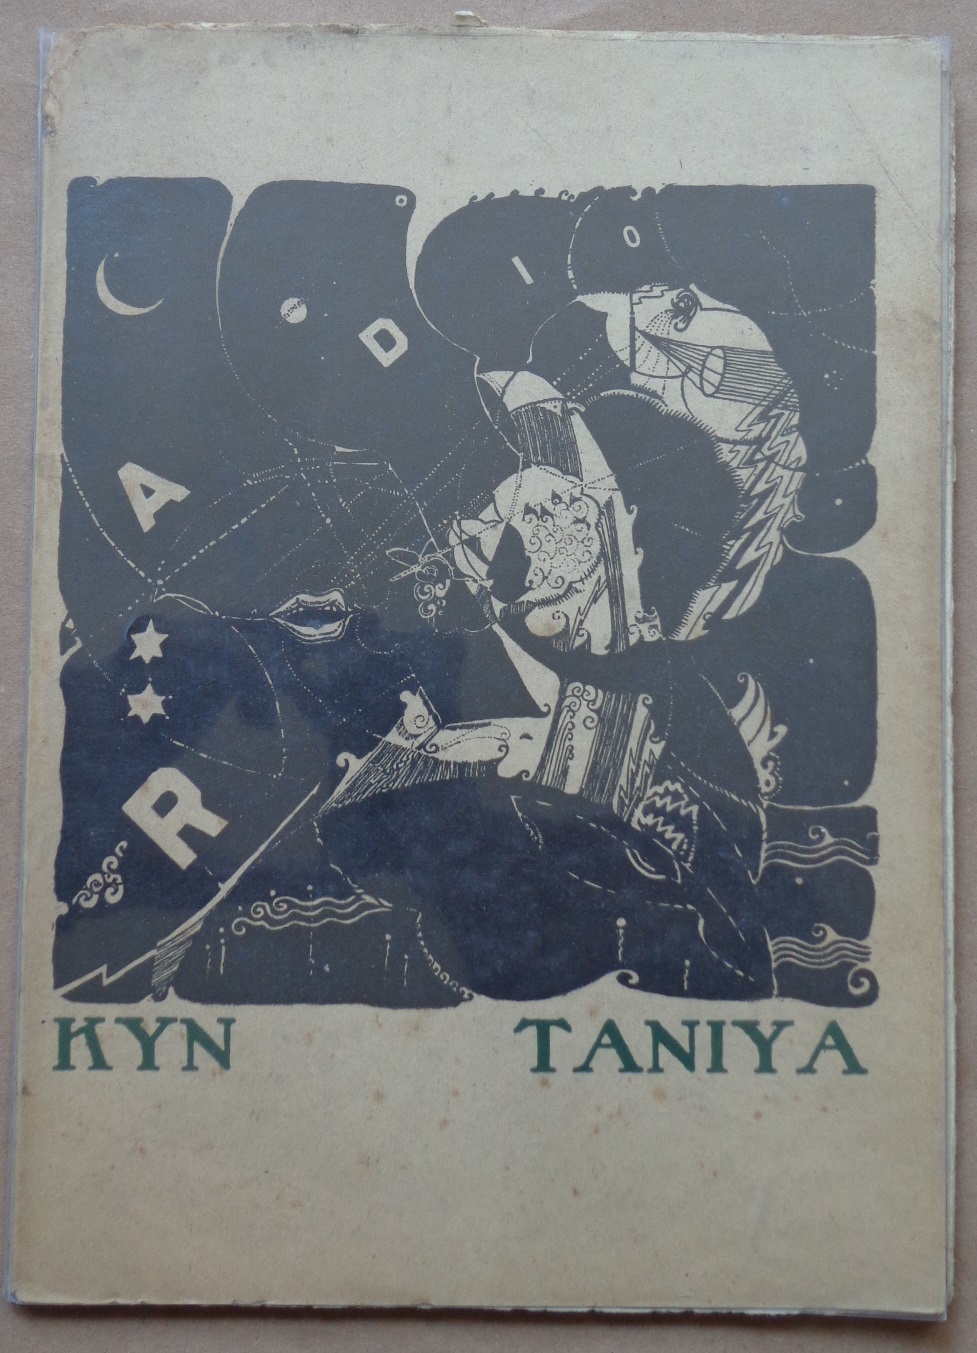 Kyn Taniya. Radio: poema inalámbrico en trece mensajes